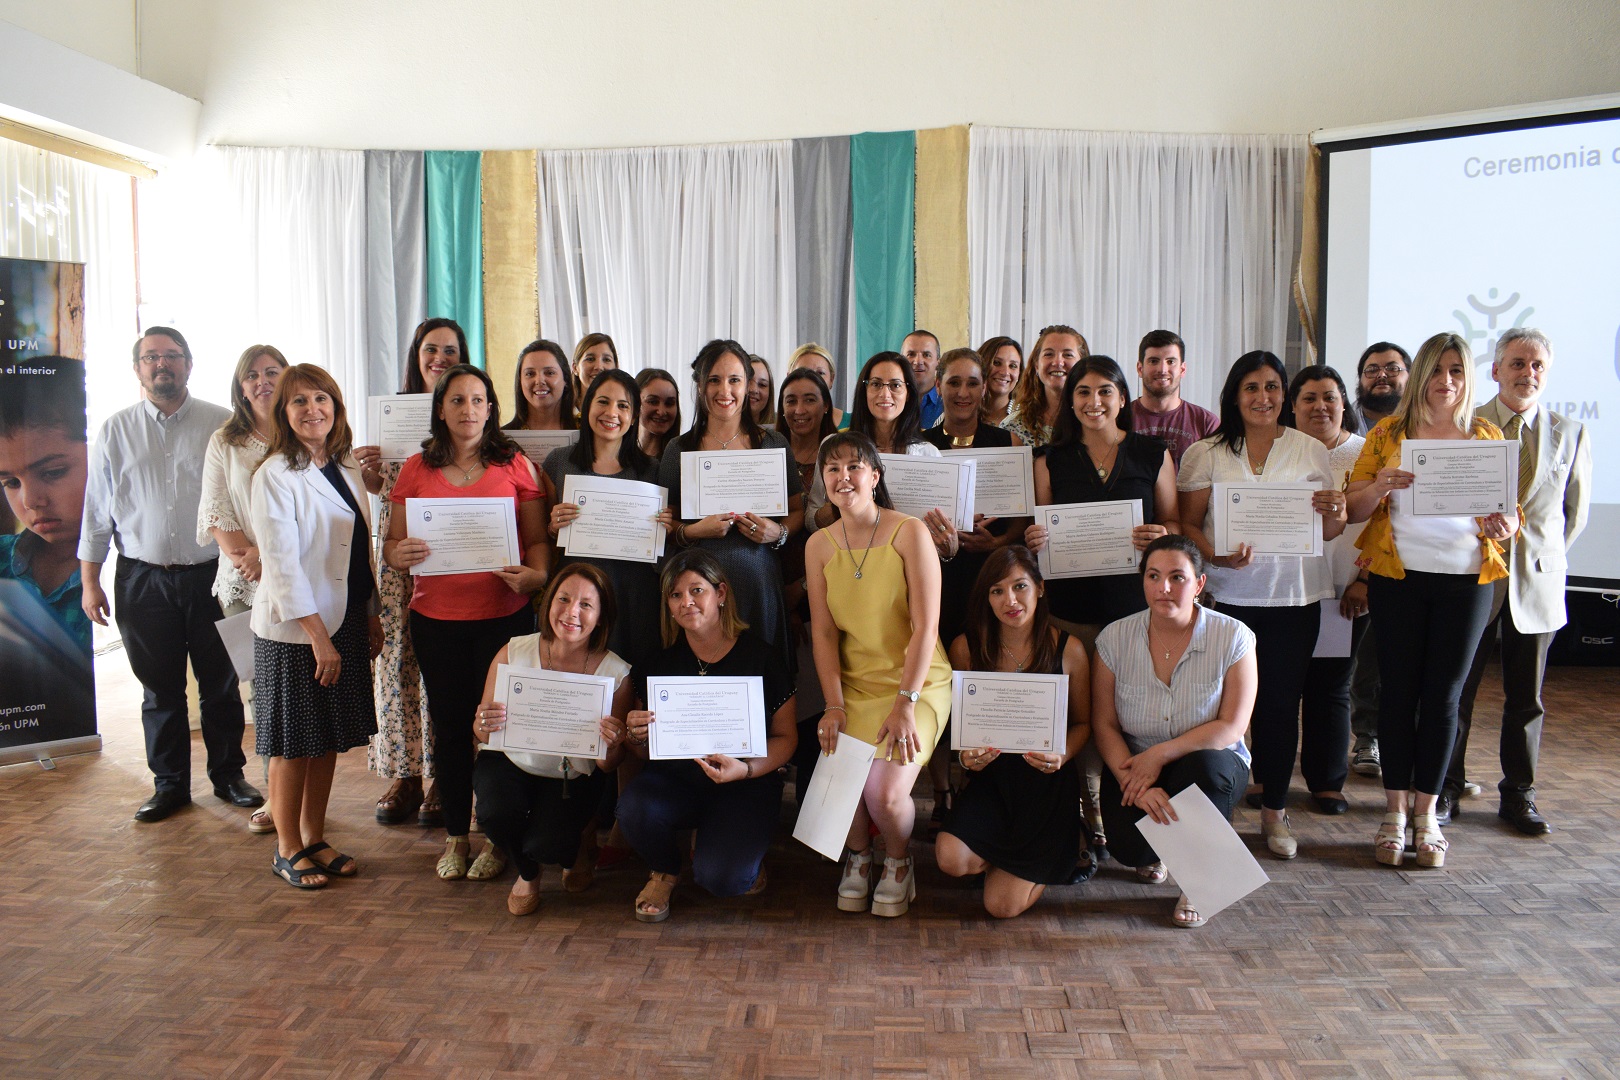 Tercera generación de docentes del interior en postgrado UCU, impulsado por Fundación UPM, en Guichón.jpg